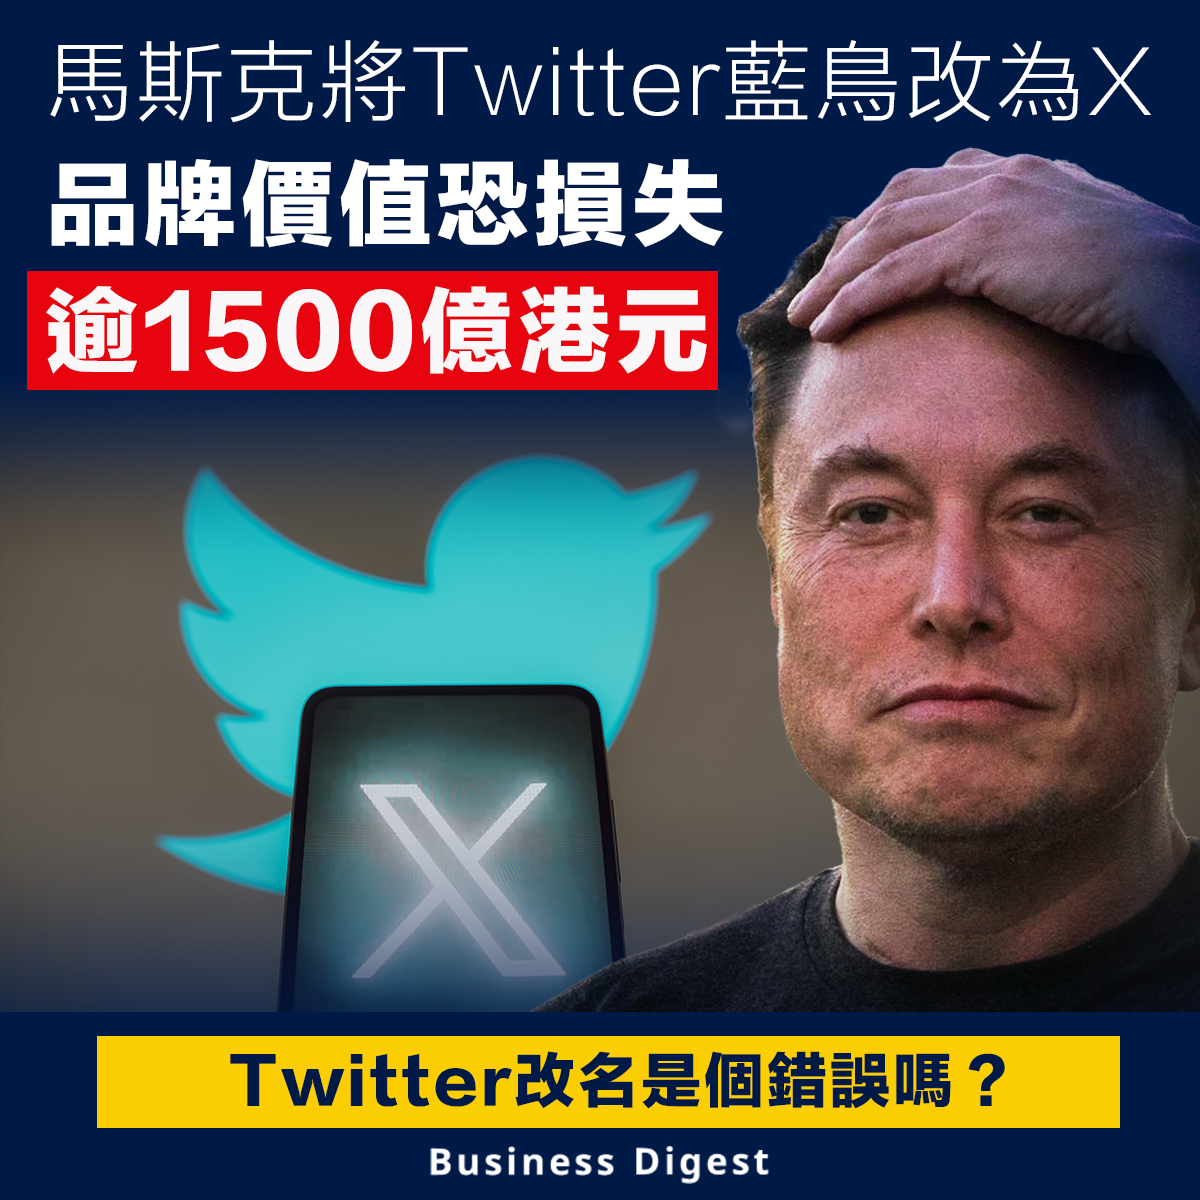 馬斯克將Twitter藍鳥改為X，品牌價值恐損失逾1500億港元